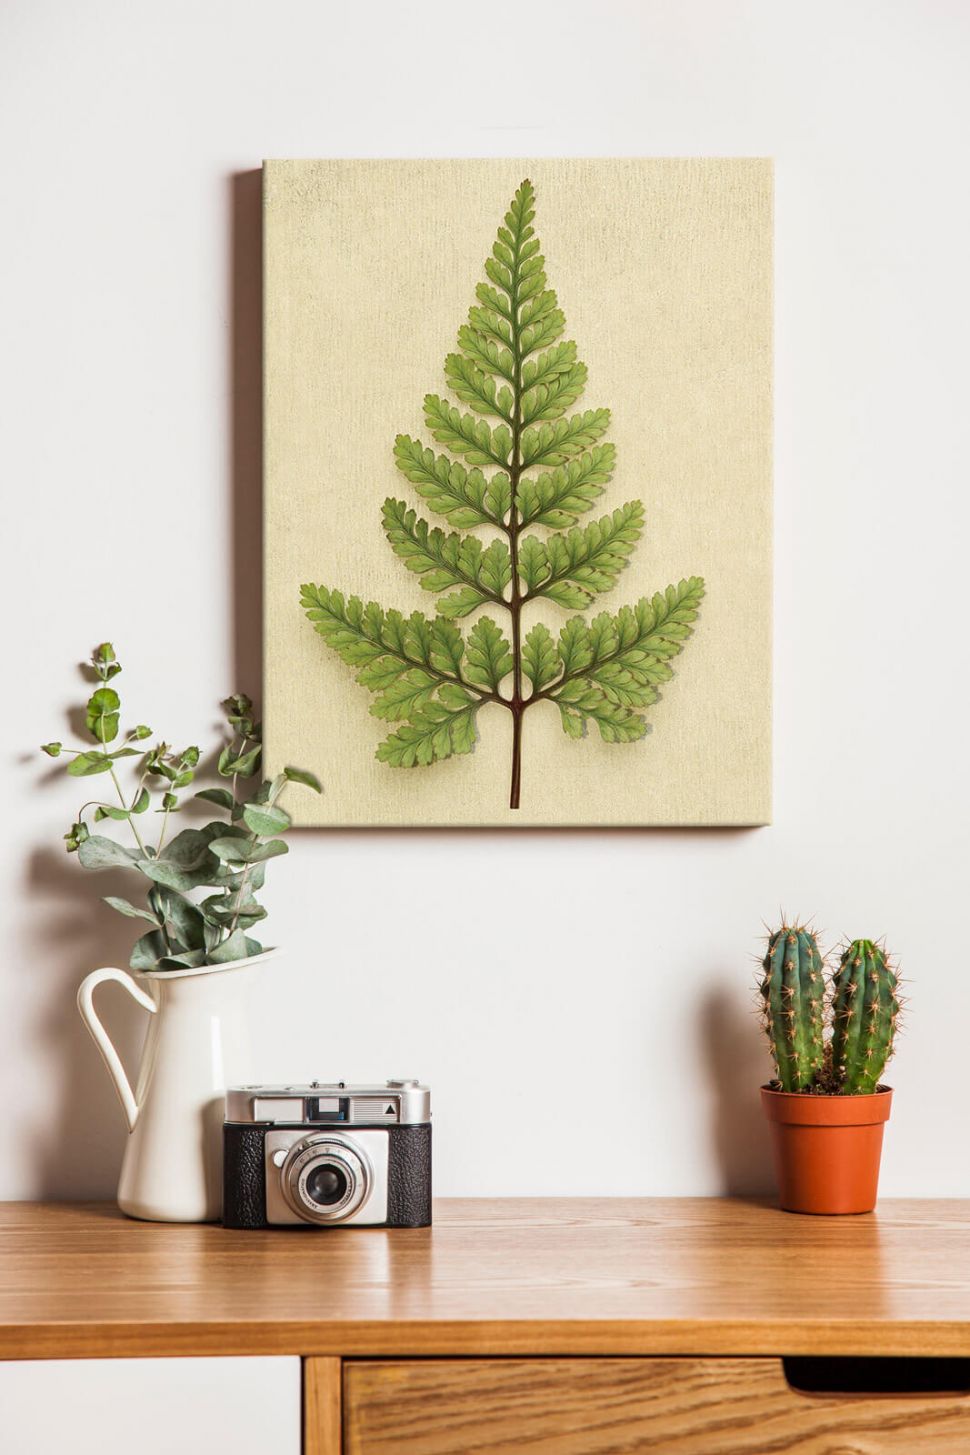 Obraz na płótnie Rabbit's Foot na ścianie w pokoju nad biurkiem z aparatem i kaktusem